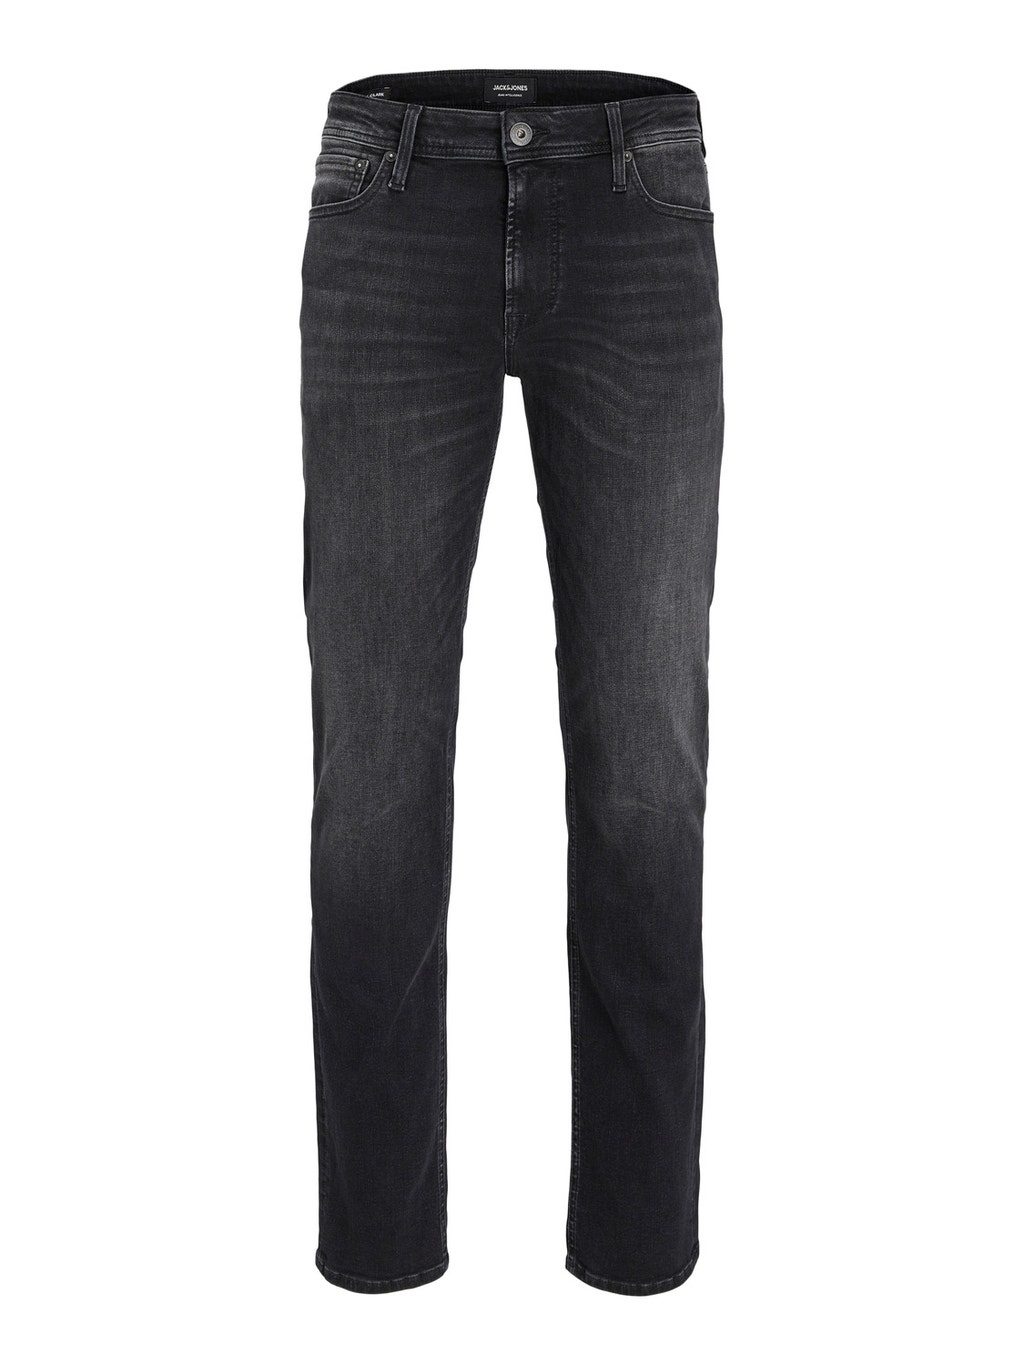 Clark Original JOS 201 Regular fit jeans with 20% discount! | Jack & Jones®